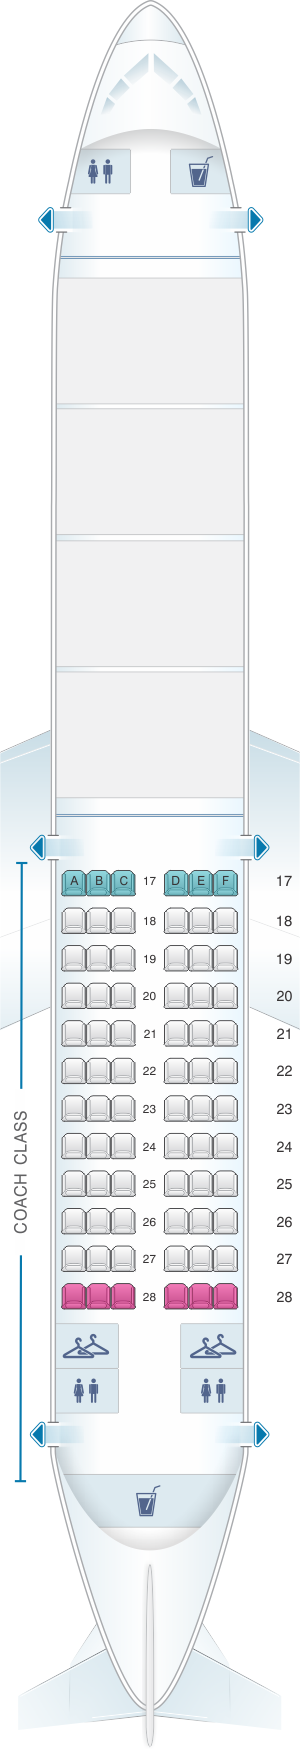 Seat map for Alaska Airlines - Horizon Air Boeing B737 400 Combi